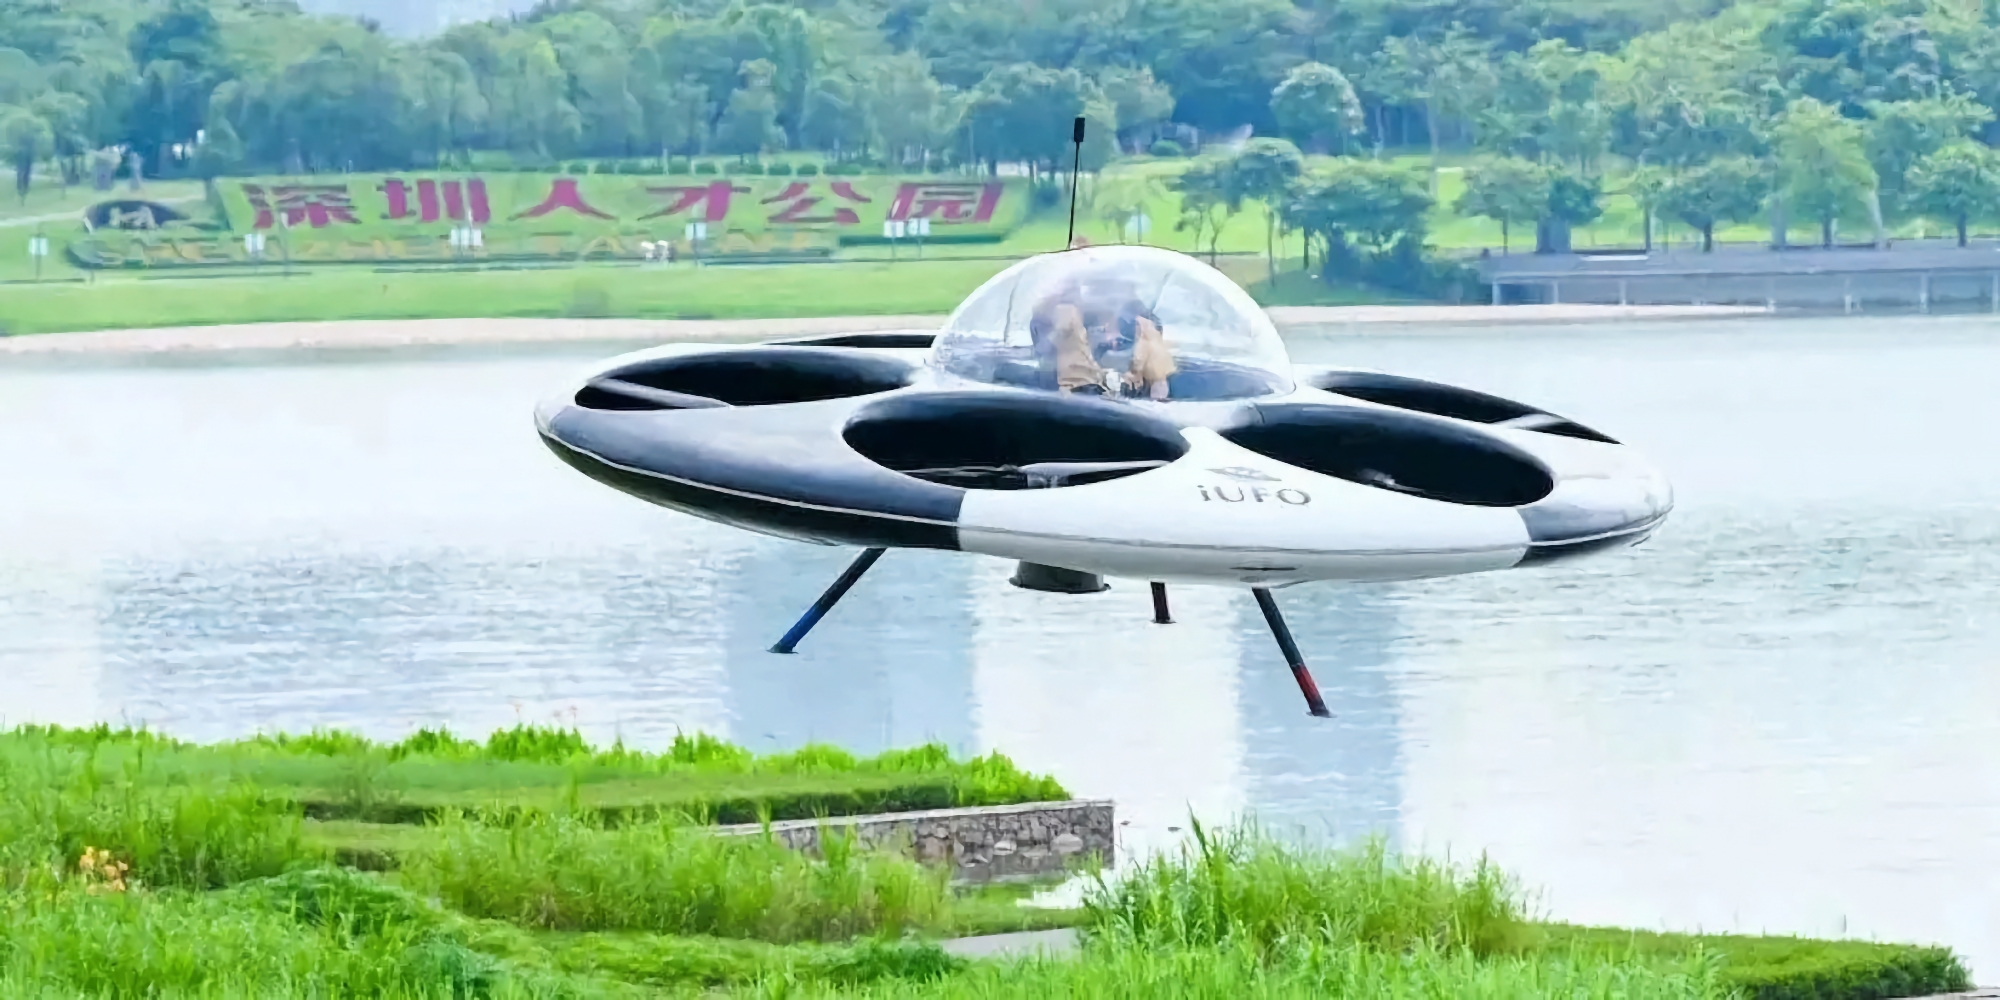 Shenzen UFO Flying Saucer Technology ha rivelato un drone passeggeri a forma di disco volante